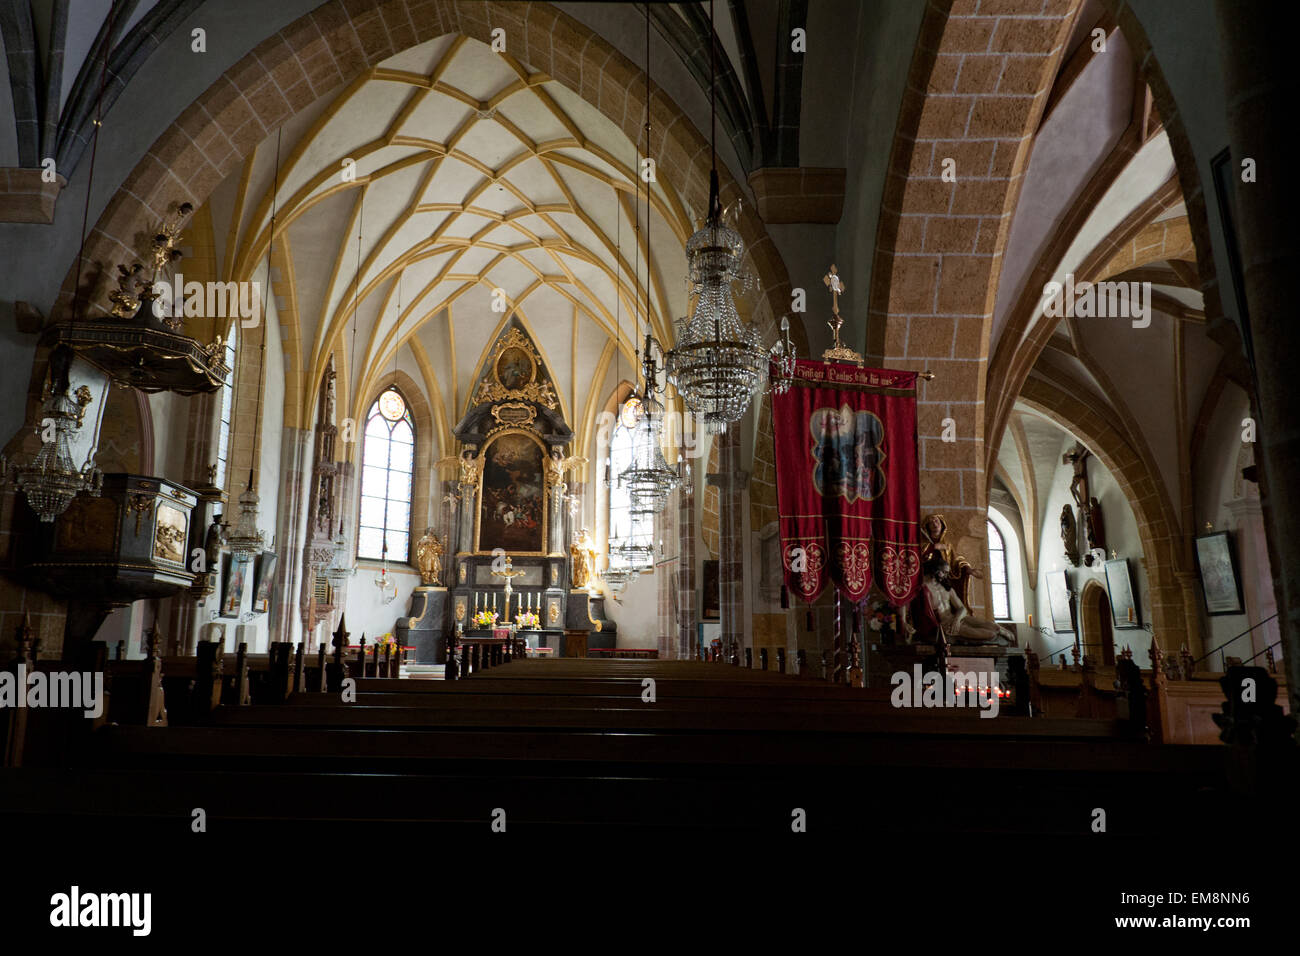 Innenraum der Kirche St. Paul mit Kreuzrippengewölbe, Bad Aussee, Styria, Salzkammergut, Austria Stock Photo